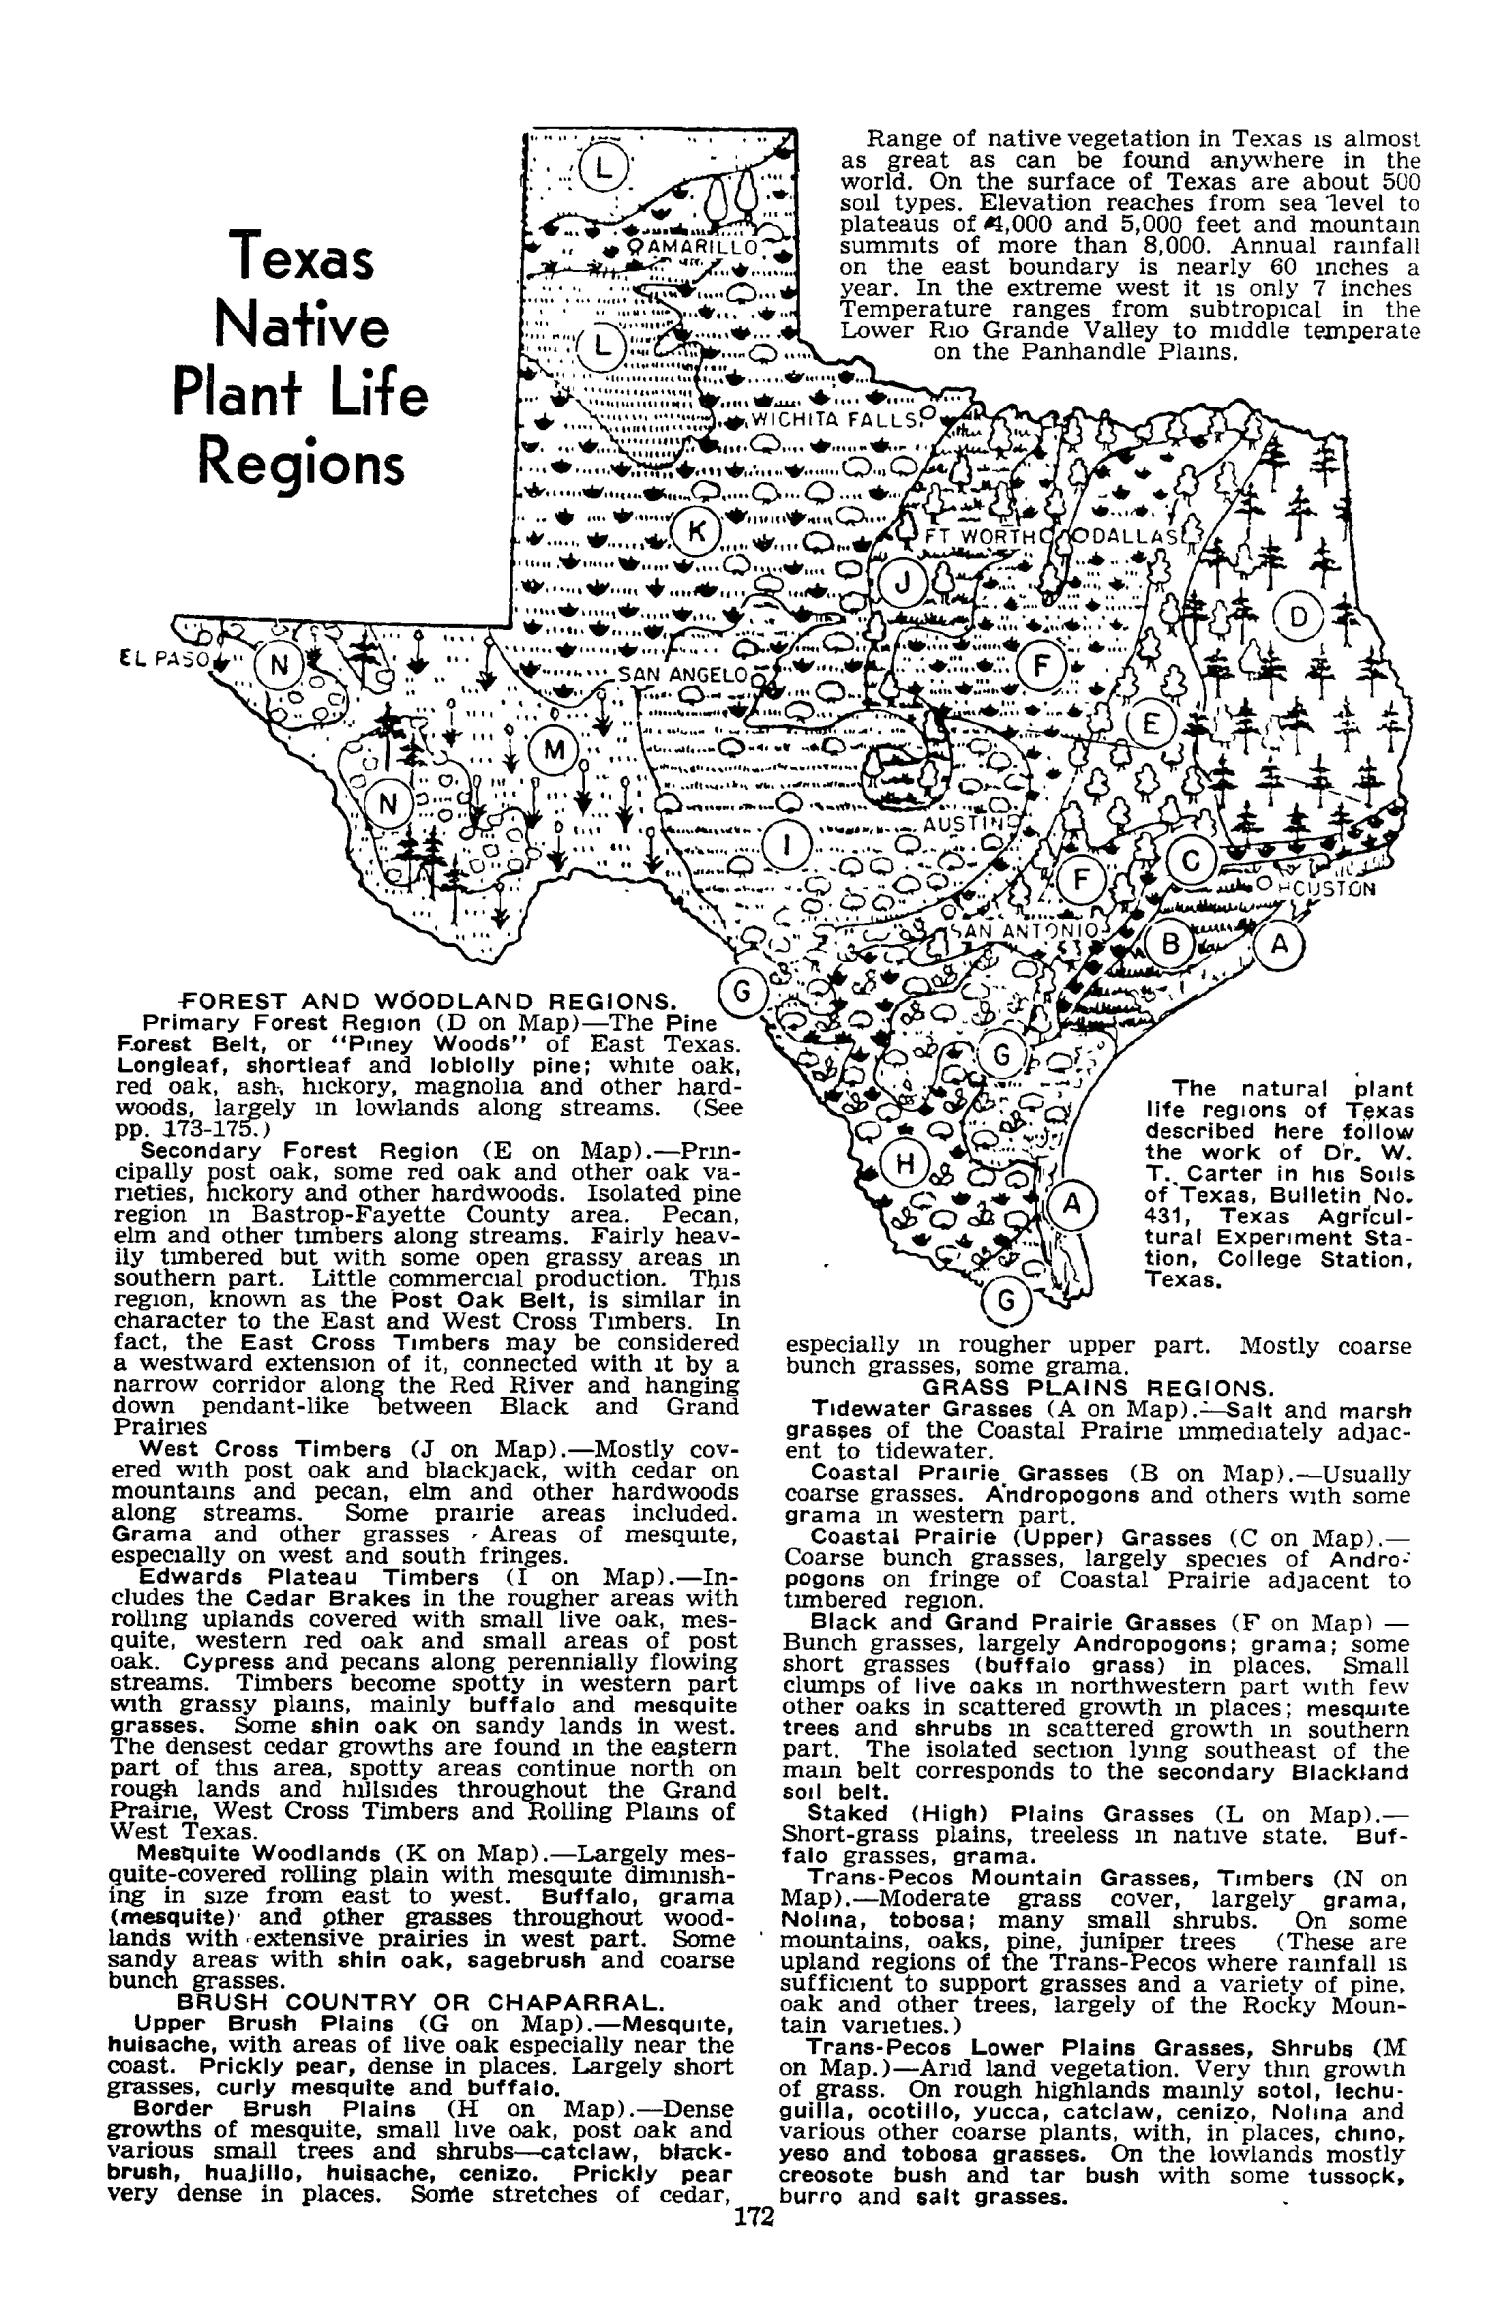 Texas Almanac, 1954-1955
                                                
                                                    172
                                                